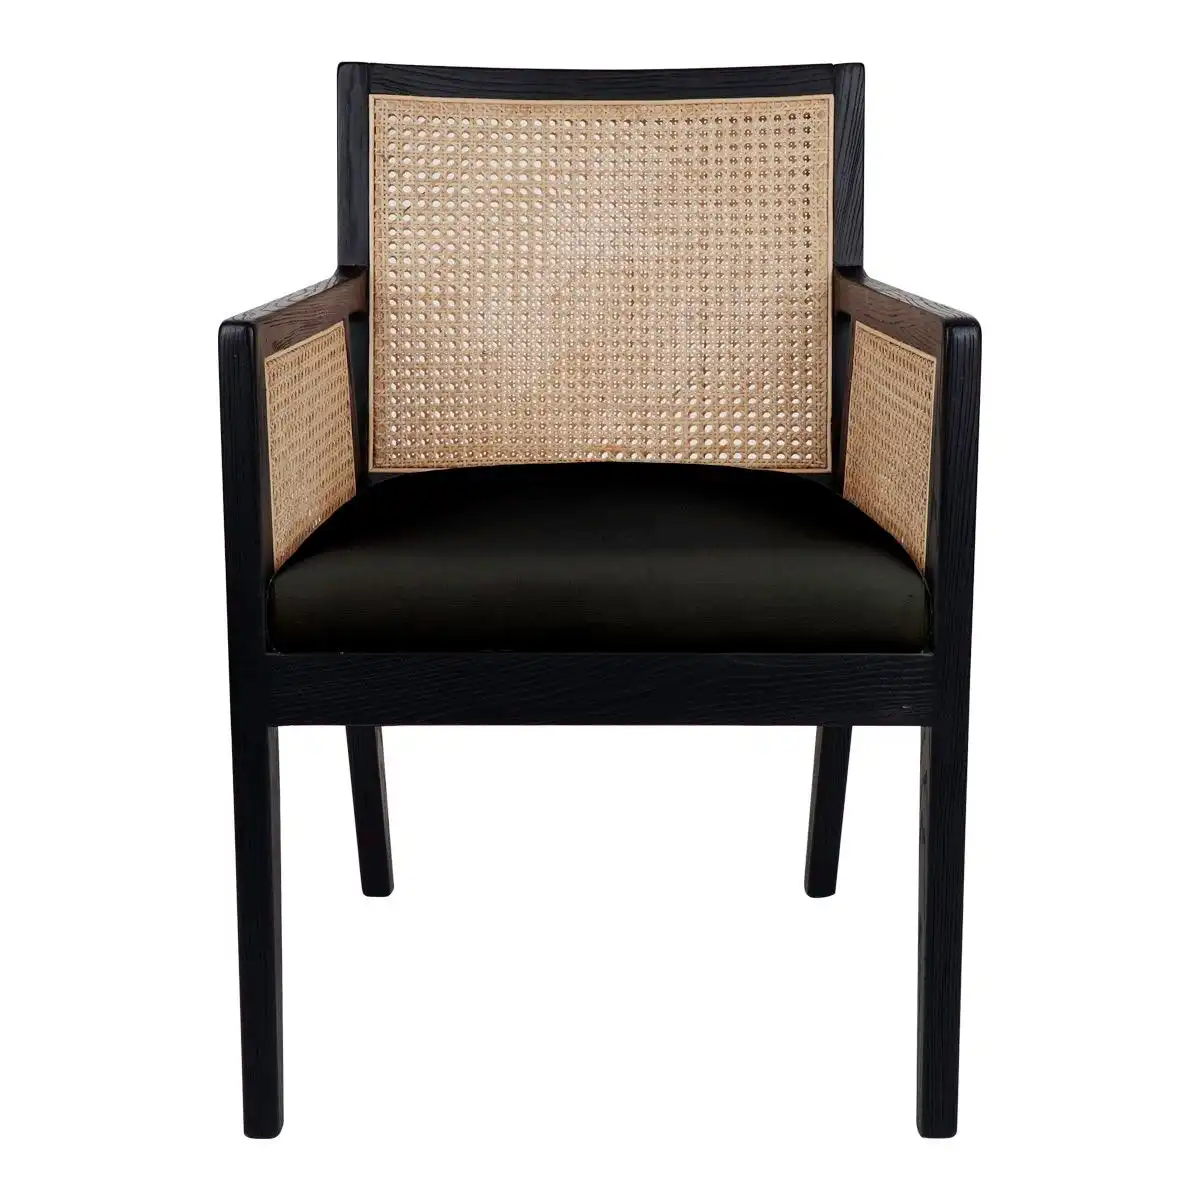 Kane Black Rattan Carver Chair - Black Linen